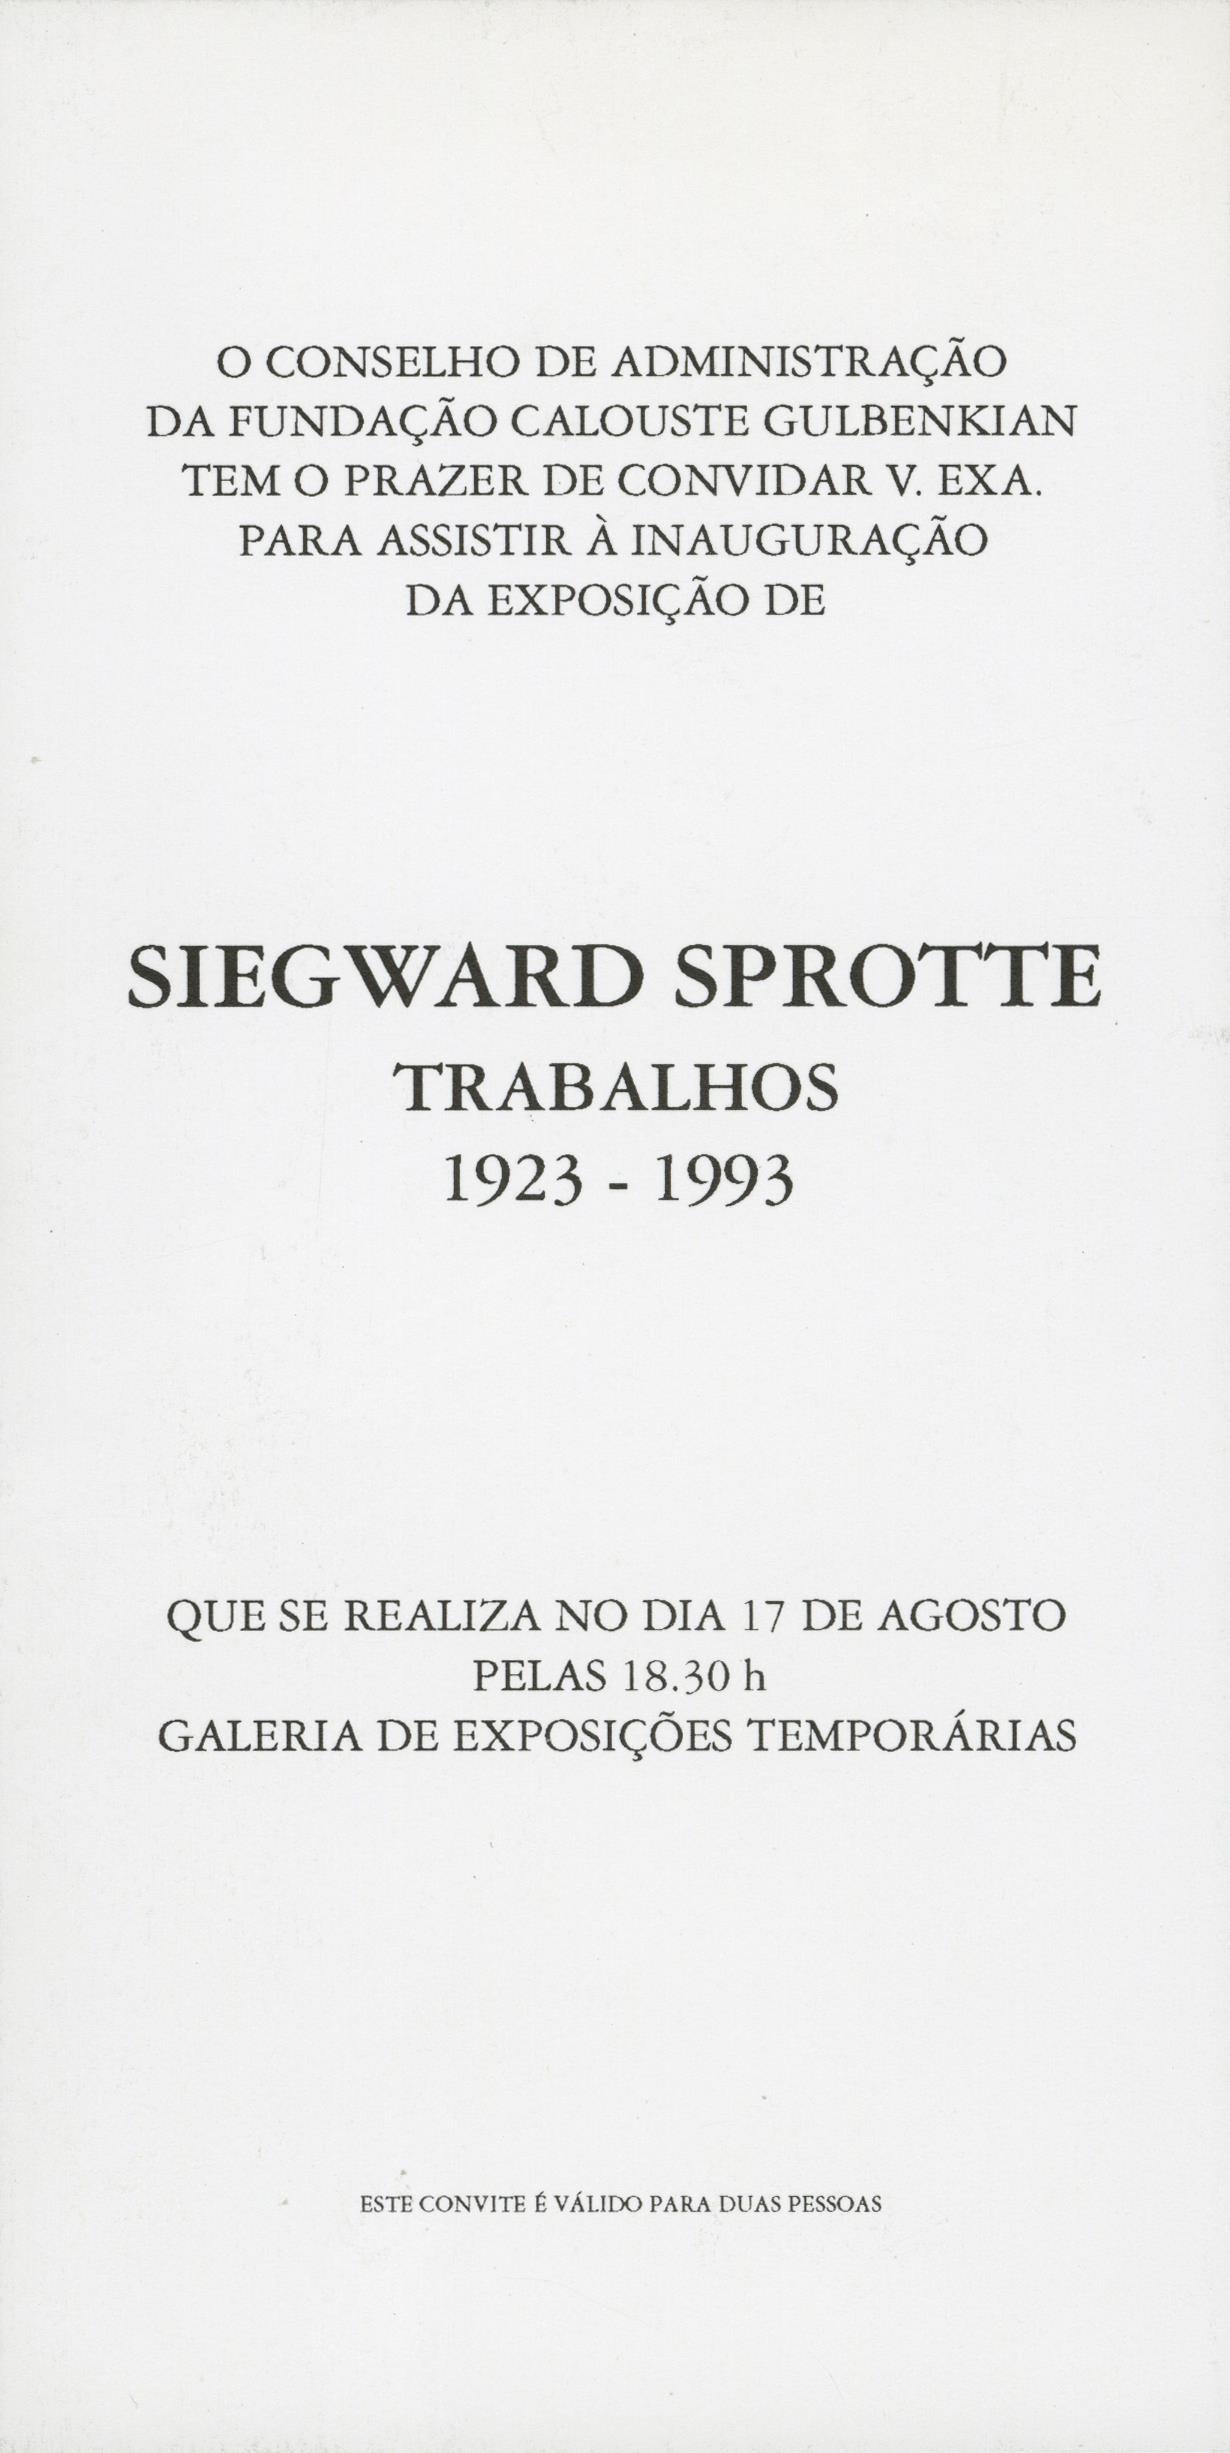 Siegward Sprotte. Arbeiten, 1923 – 1993